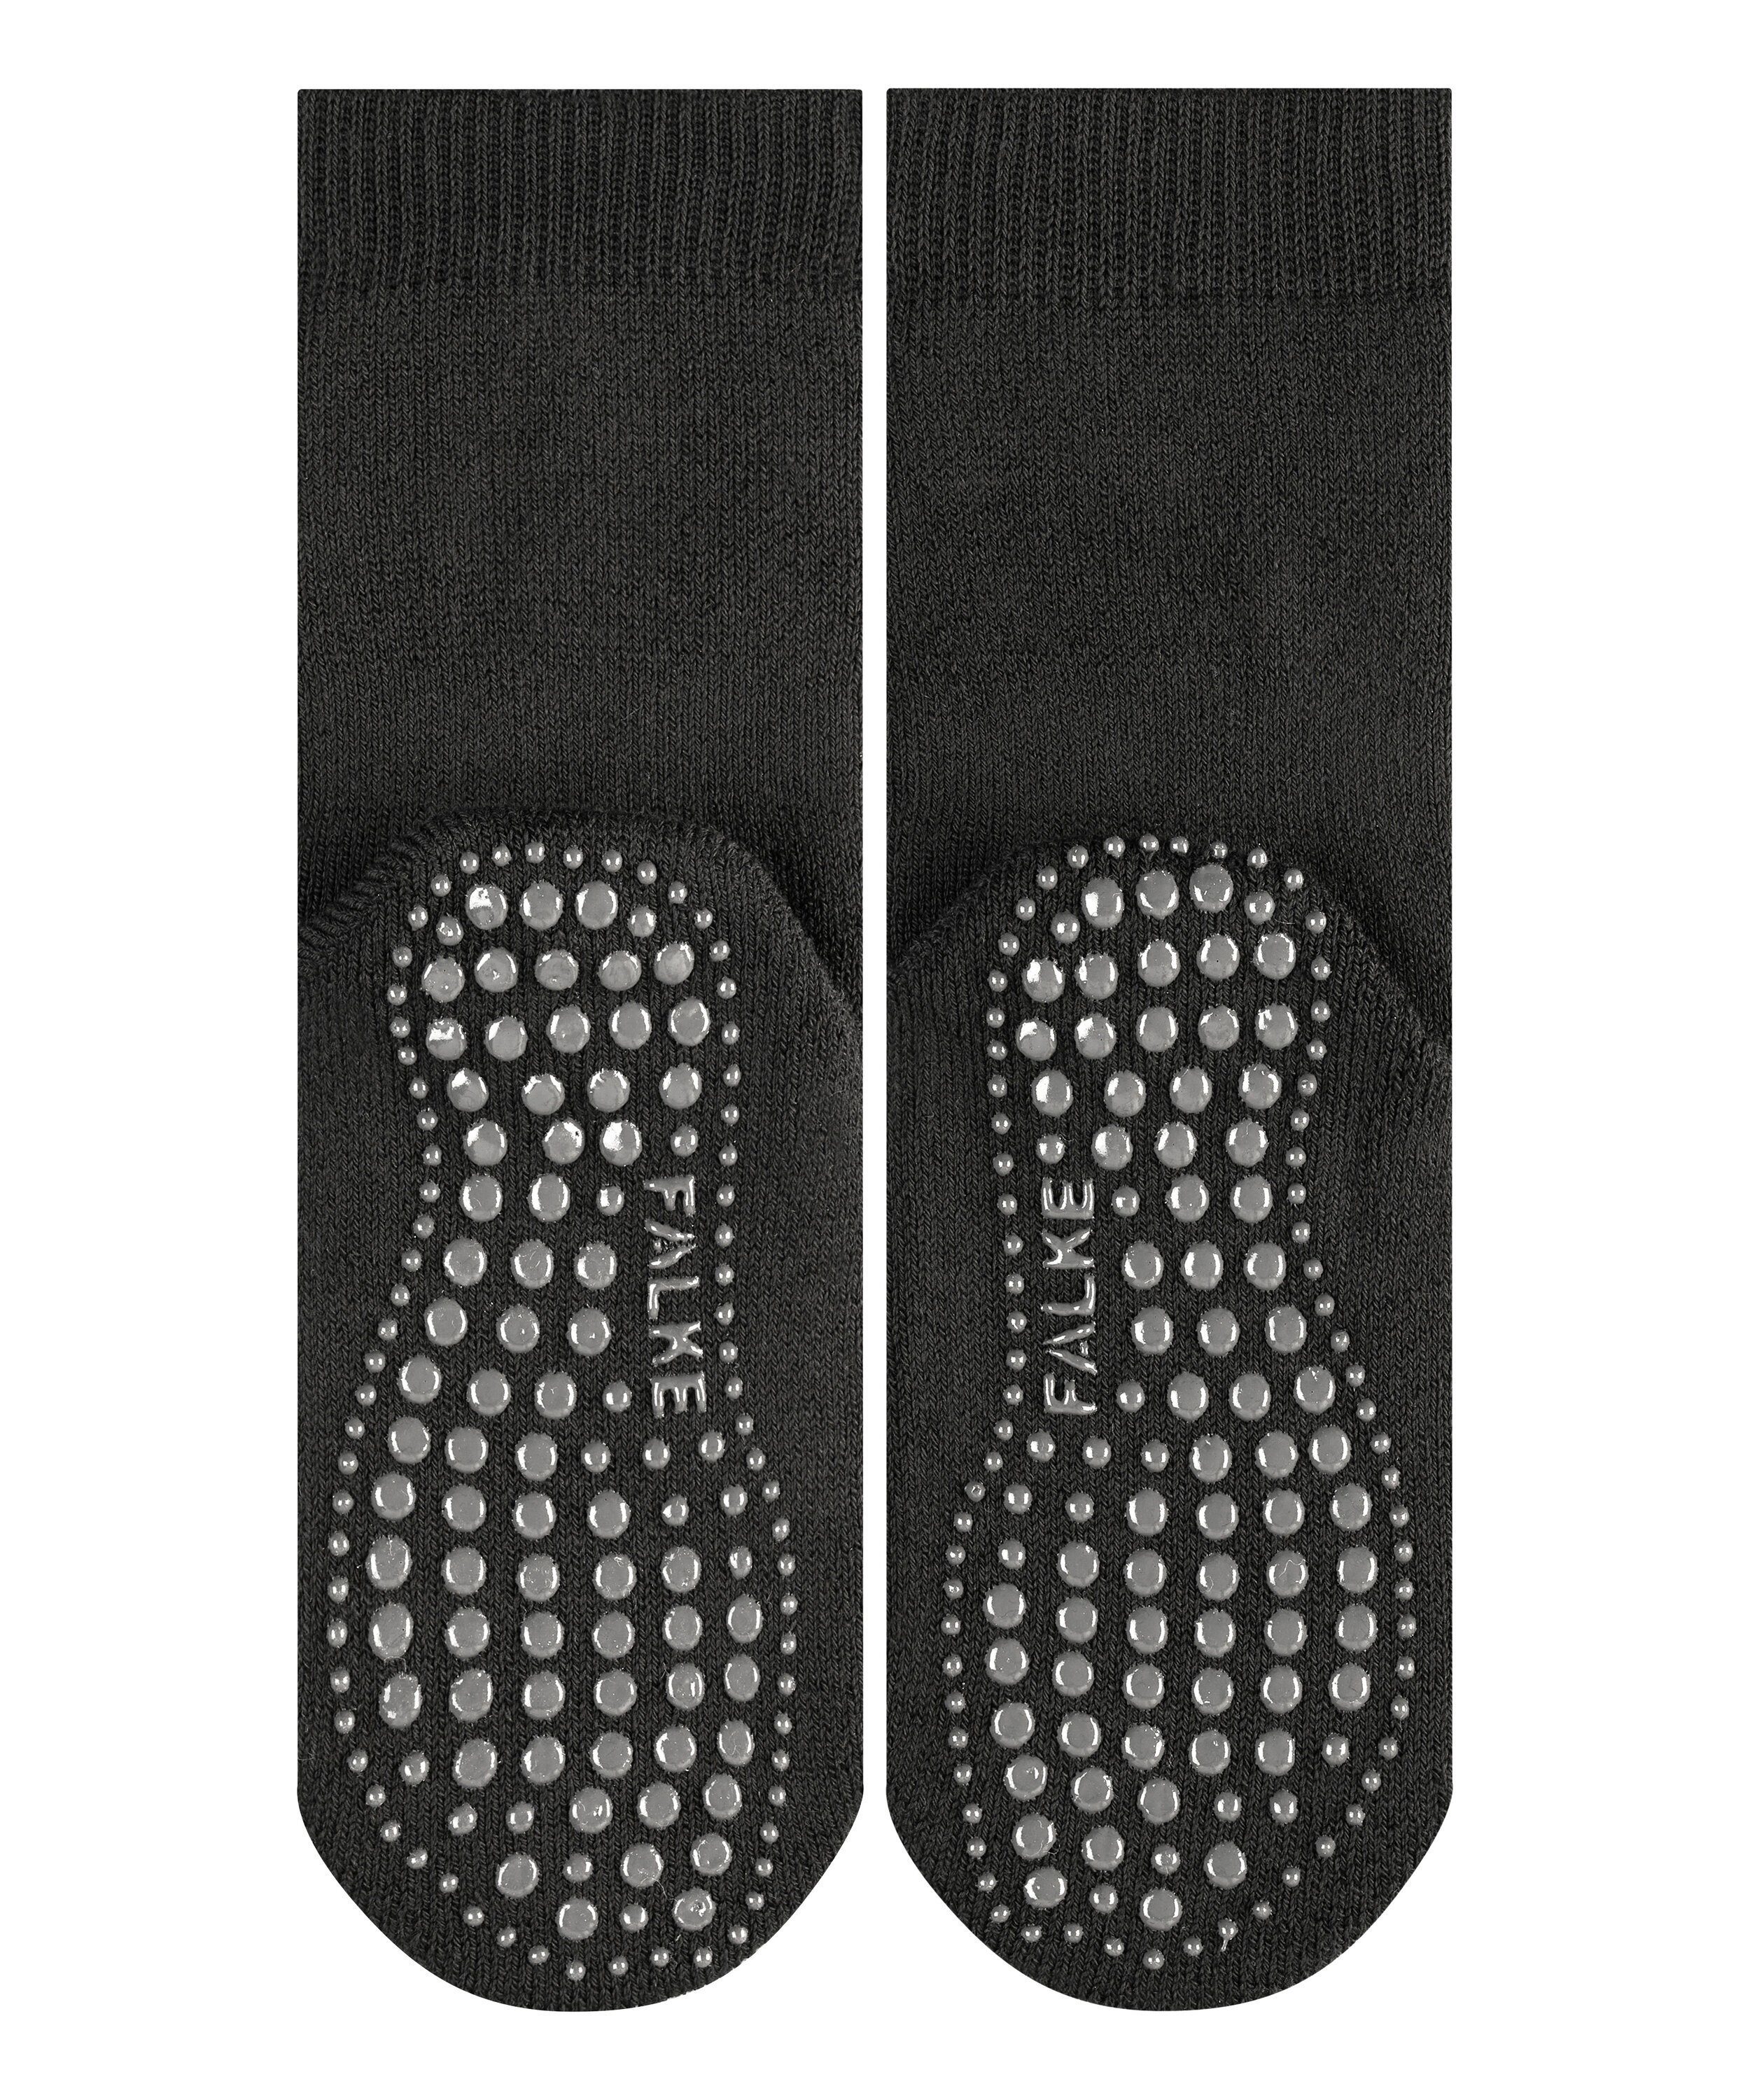 FALKE Socken Catspads black (1-Paar) (3000)